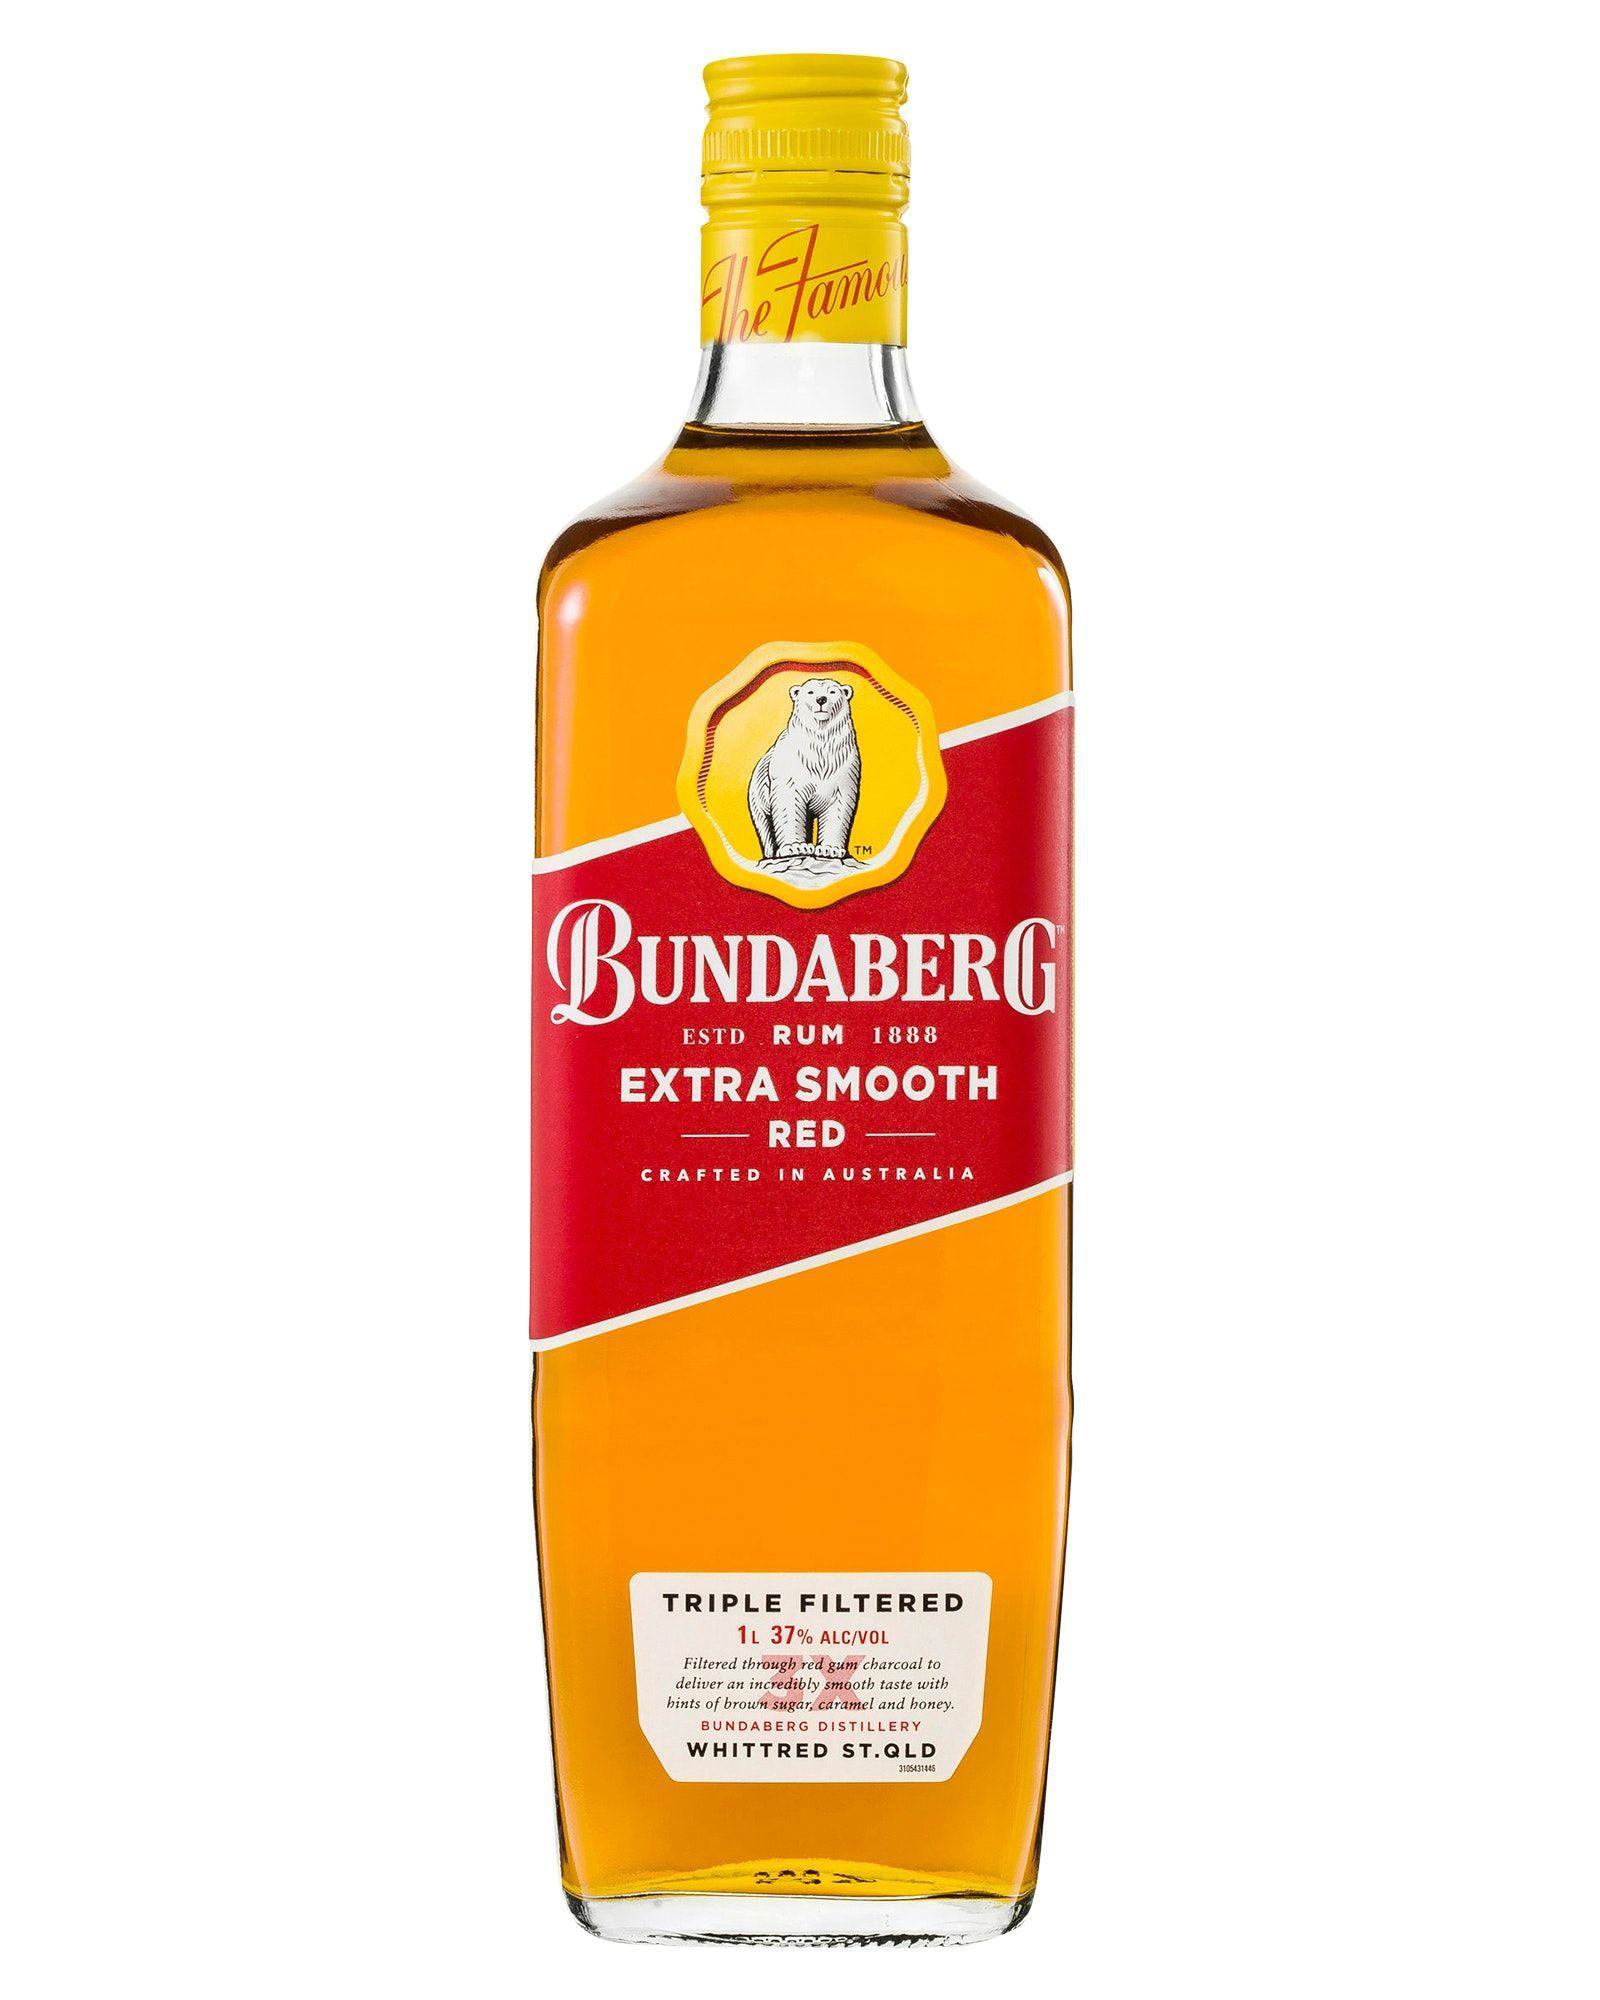 Bundaberg Extra Smooth Red Rum 1L Bottle 1 litre